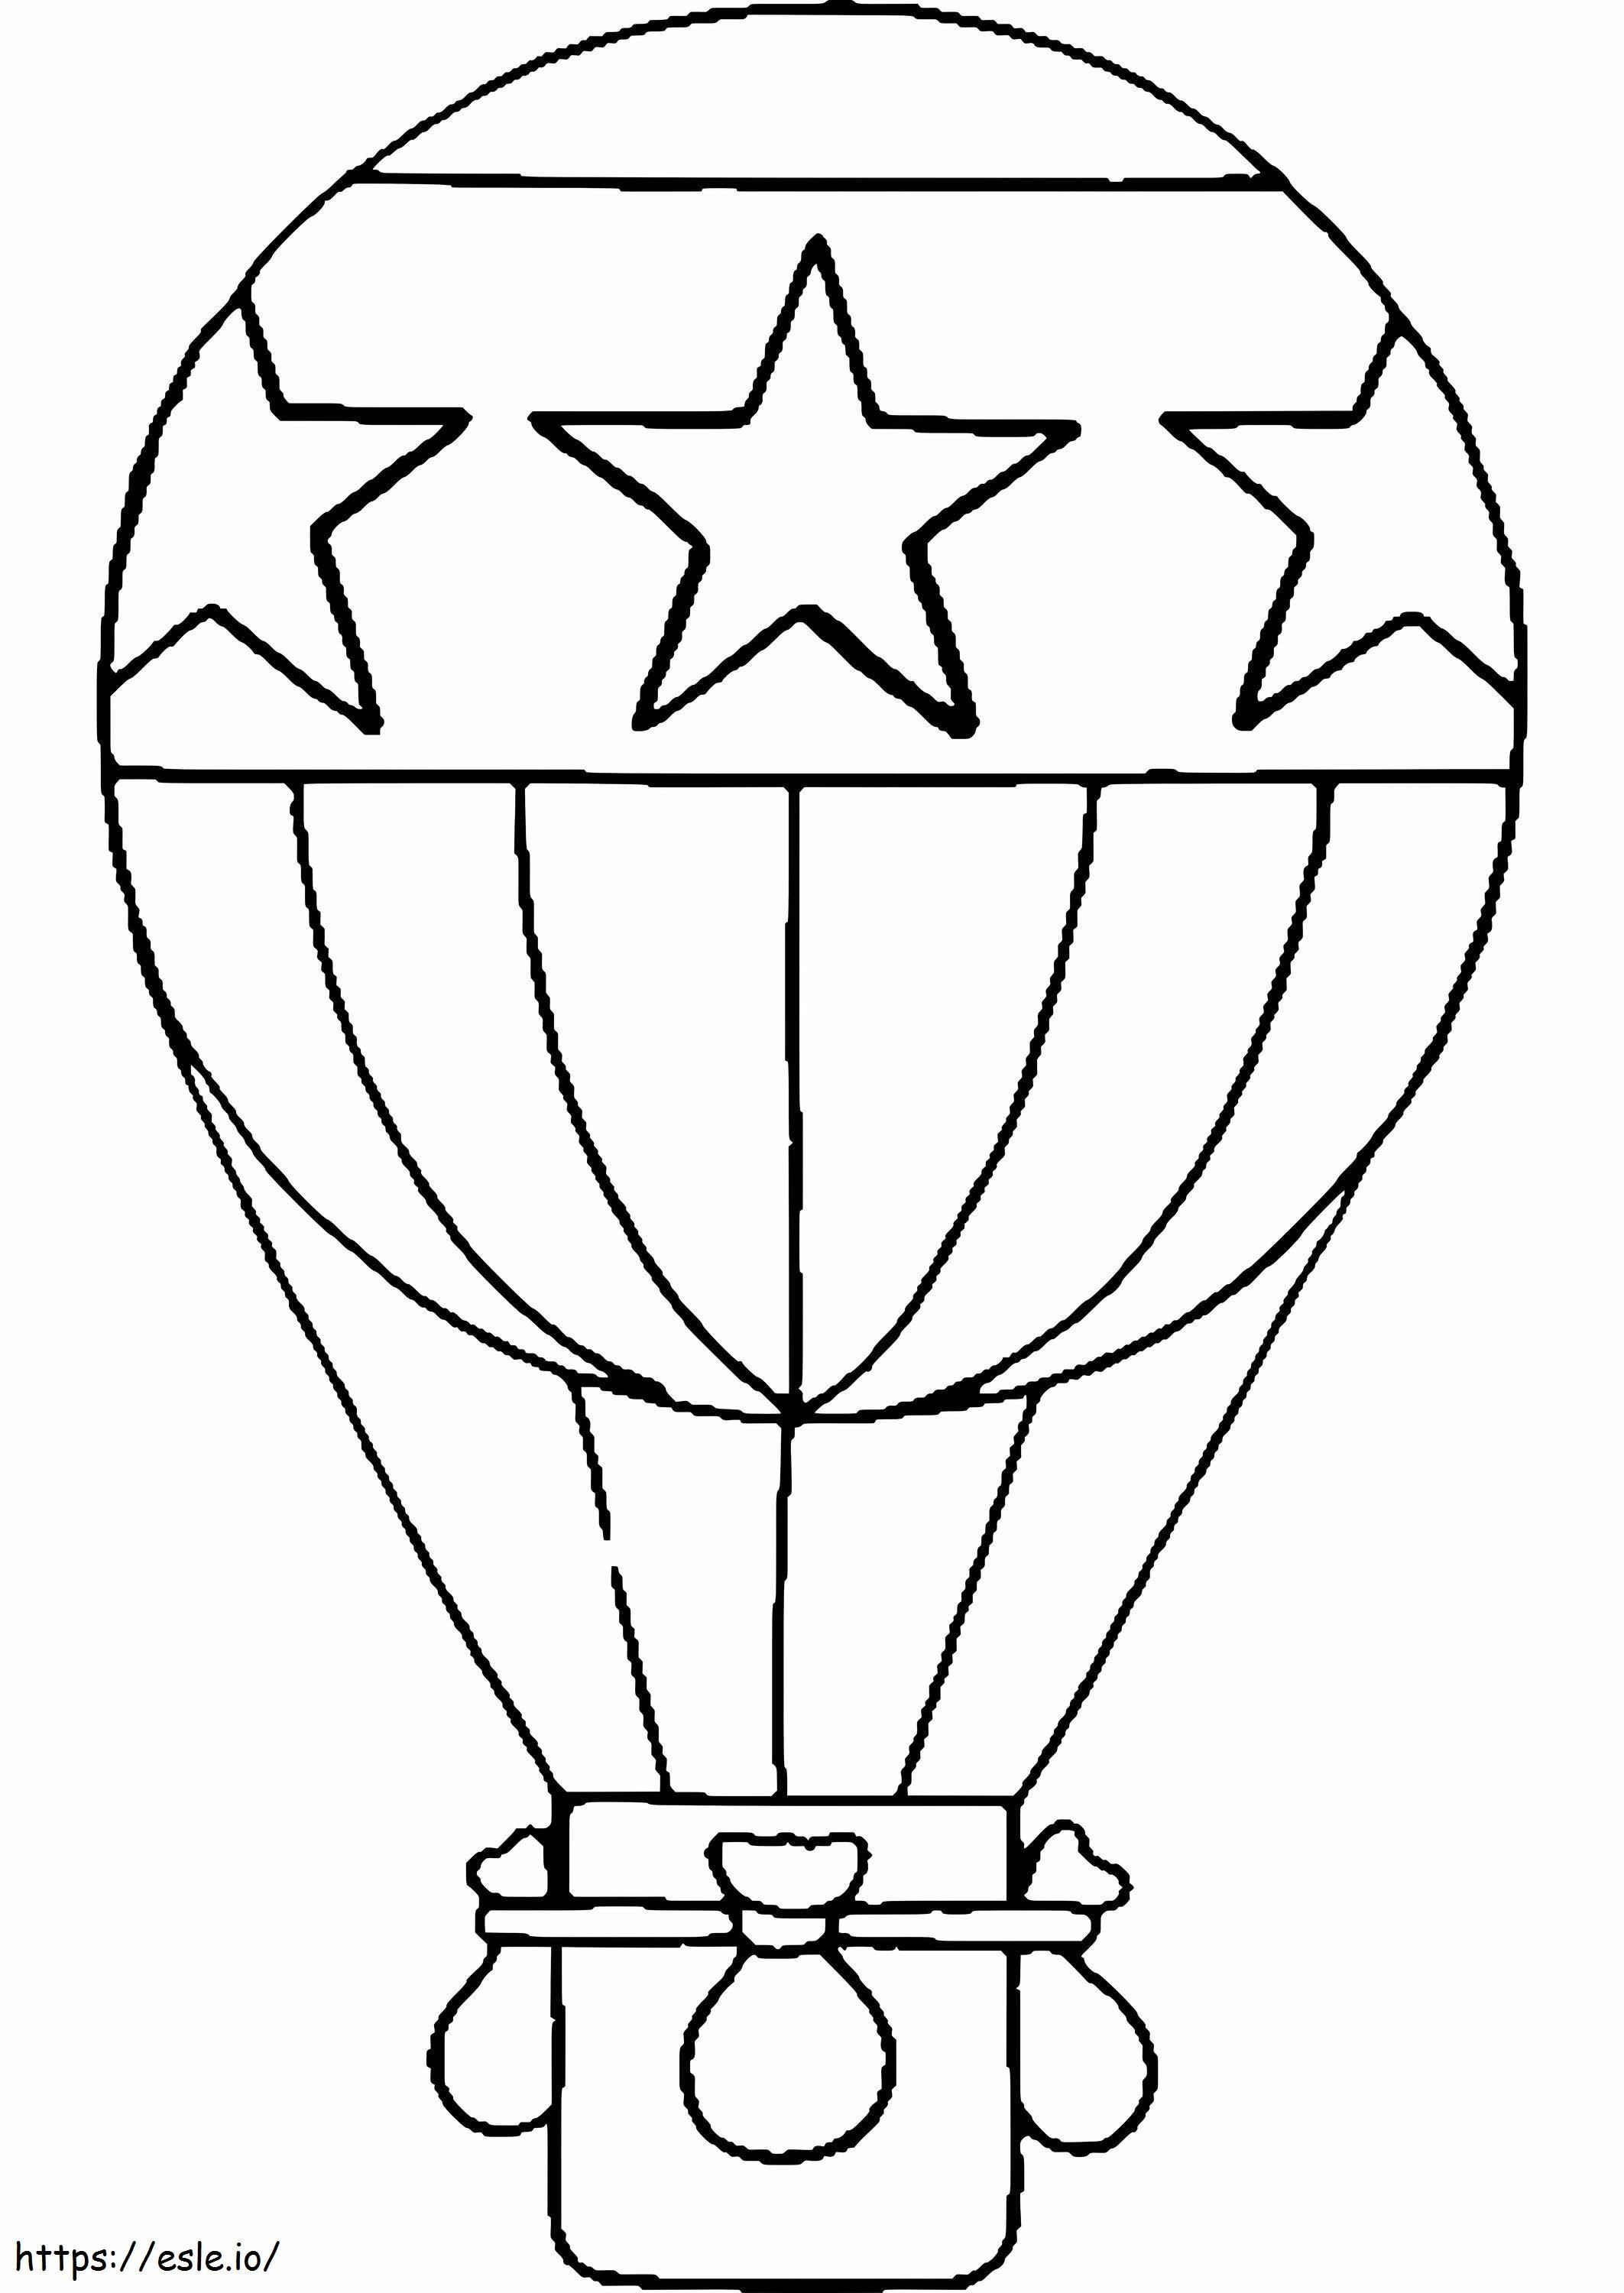 Schema eines skalierten Heißluftballons ausmalbilder